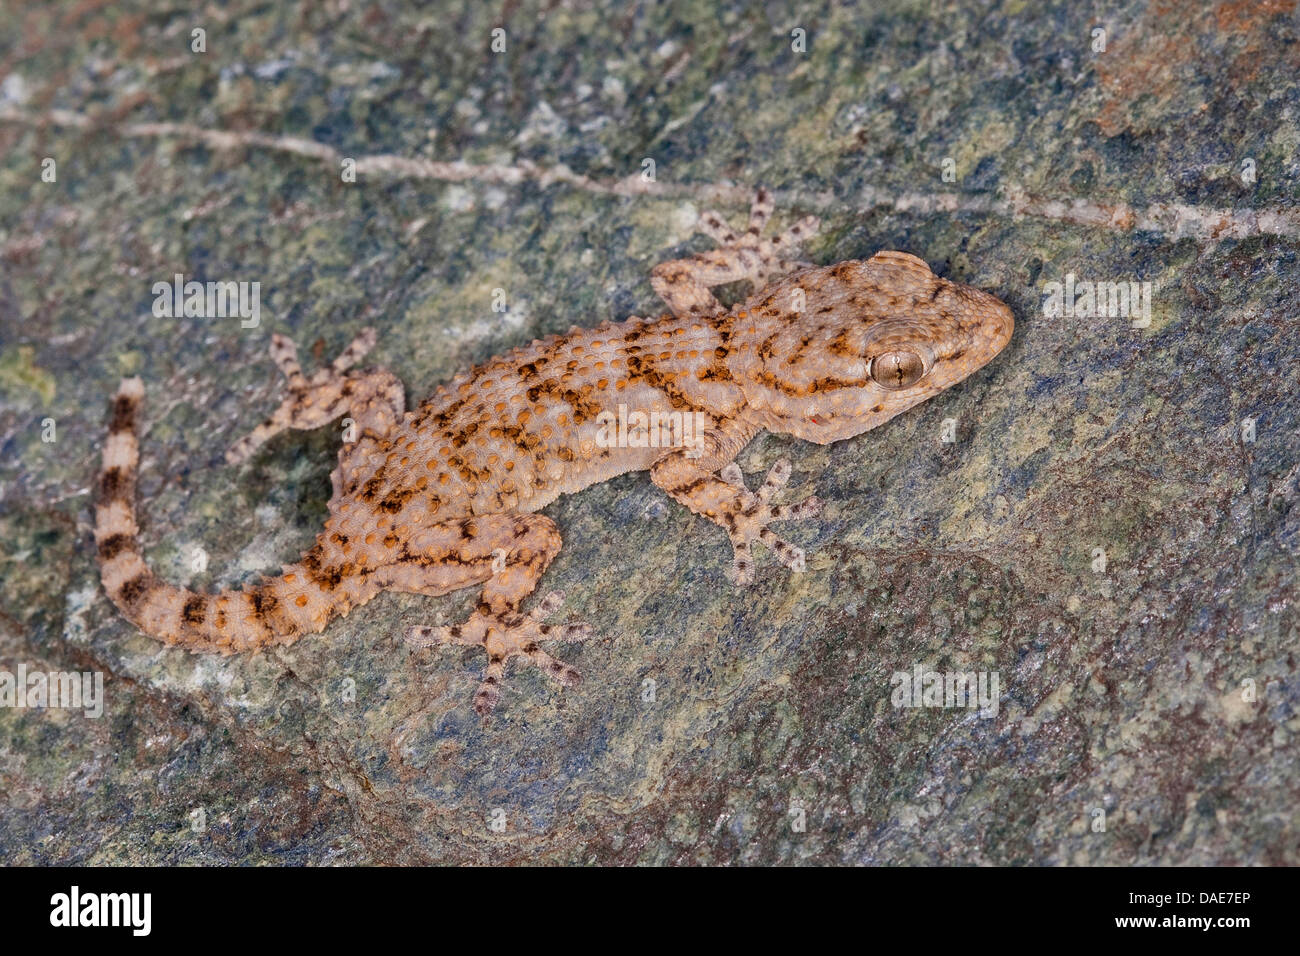 Gemeinsame Wand Gecko, maurischer Gecko, maurischen Wand Gecko, Salamanquesa, Krokodil Gecko, europäische gemeinsame Gecko, Maurita Naca Gecko (Tarentola Mauritanica), sitzt auf einer Mauer, Italien Stockfoto